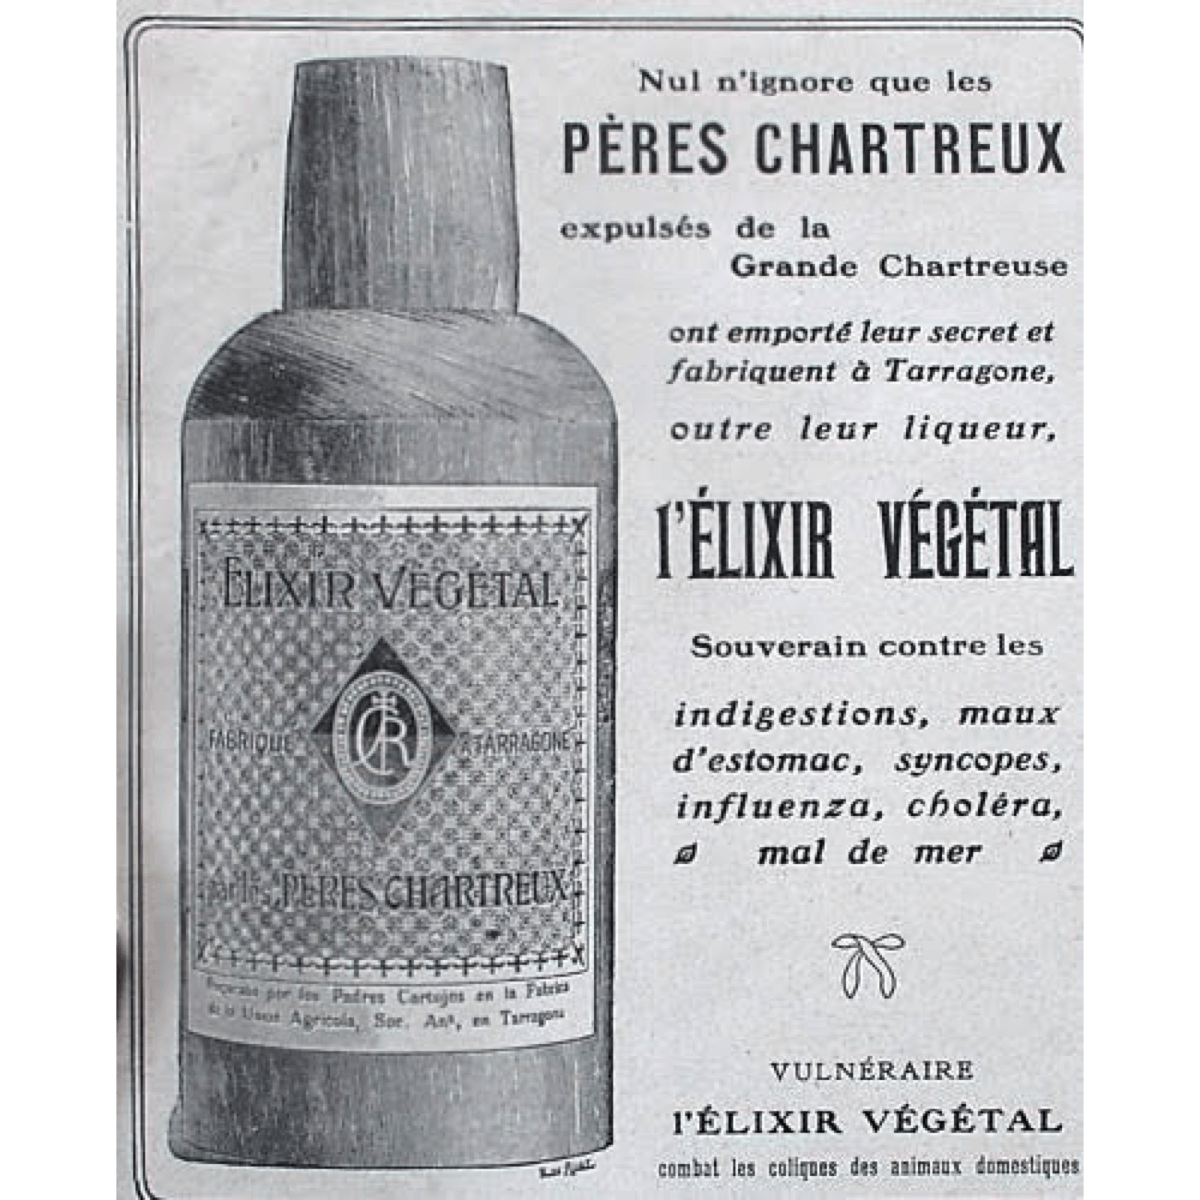 Cet encart de 1929 présente l'élixir végétal de la Grande Chartreuse, souverain contre « les indigestions, maux d'estomac, syncopes, influenza, choléra et mal de mer »